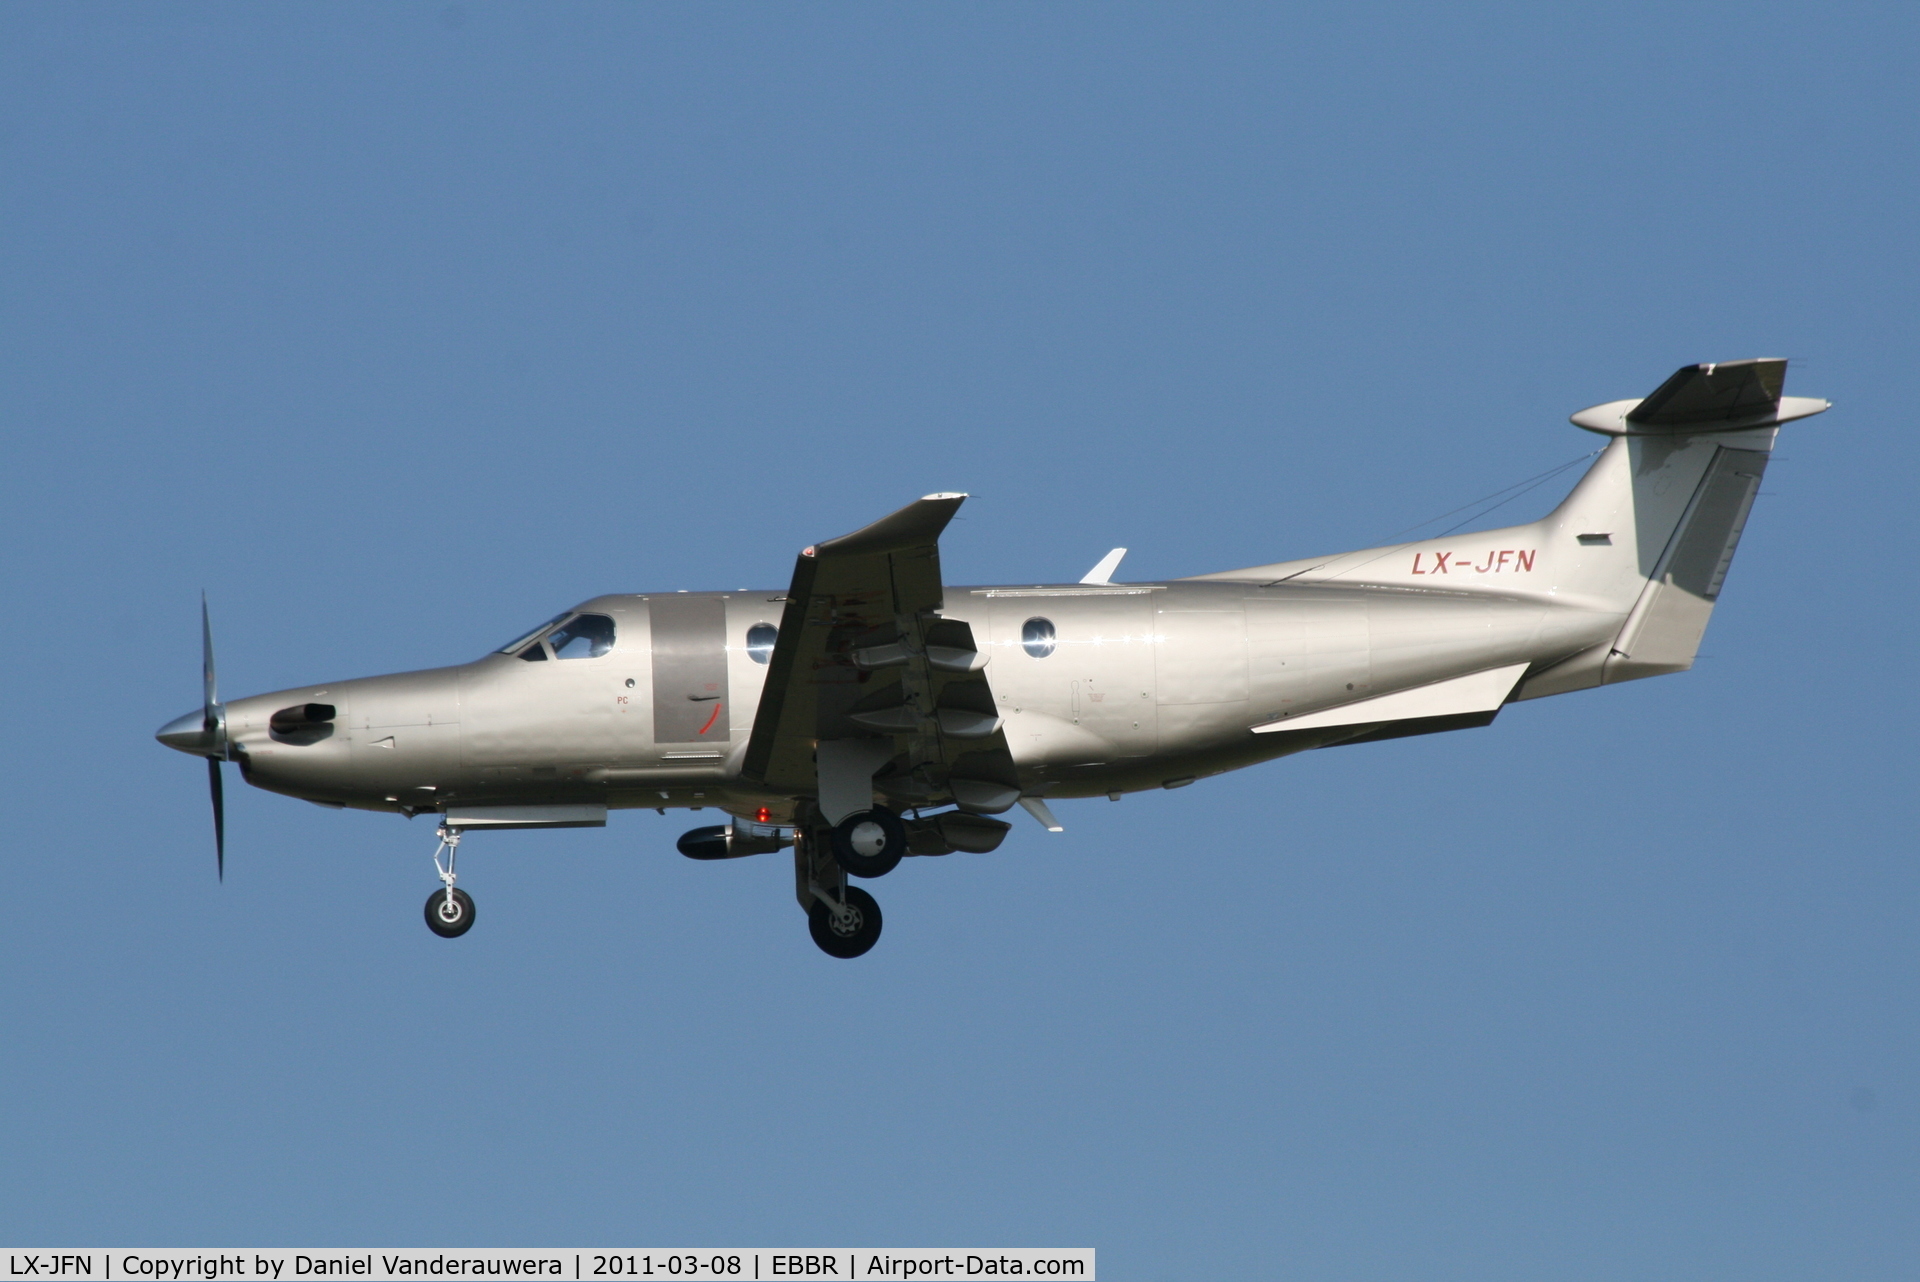 LX-JFN, 2007 Pilatus PC-12/47 C/N 855, Arrival to RWY 25L